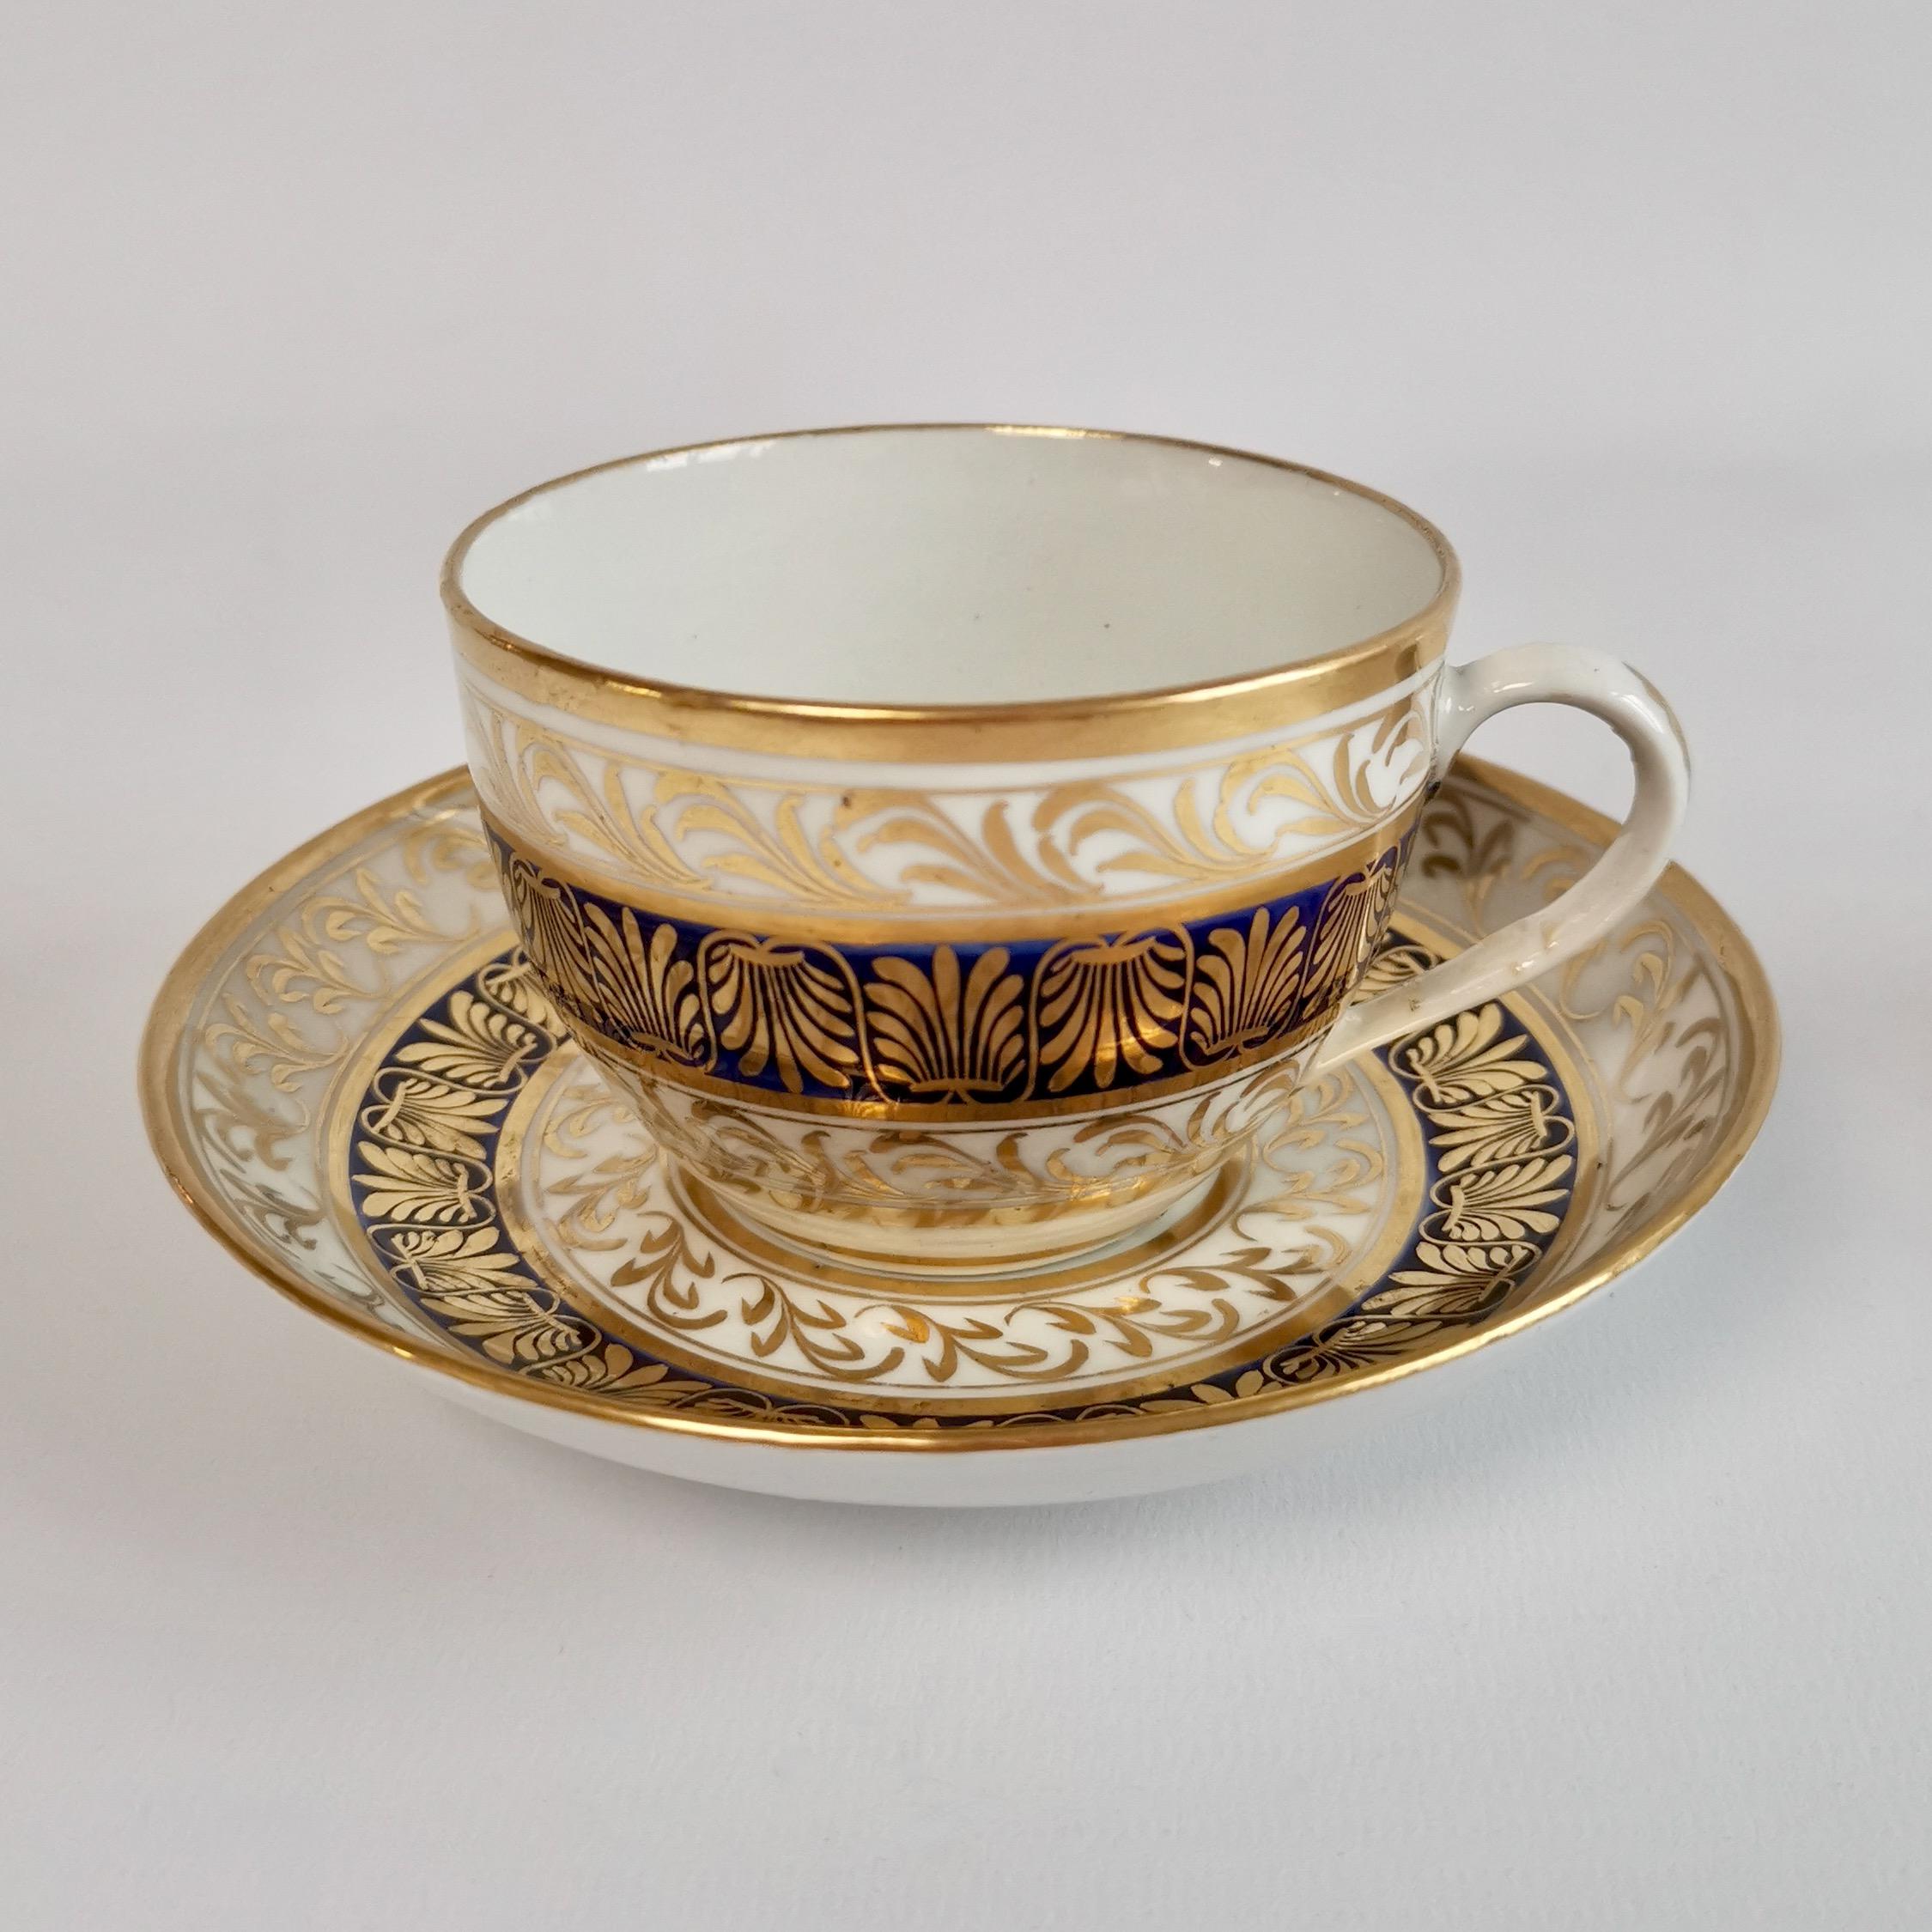 English New Hall Porcelain Teacup Trio, Regency Patt. Blue and Gilt, ca 1810